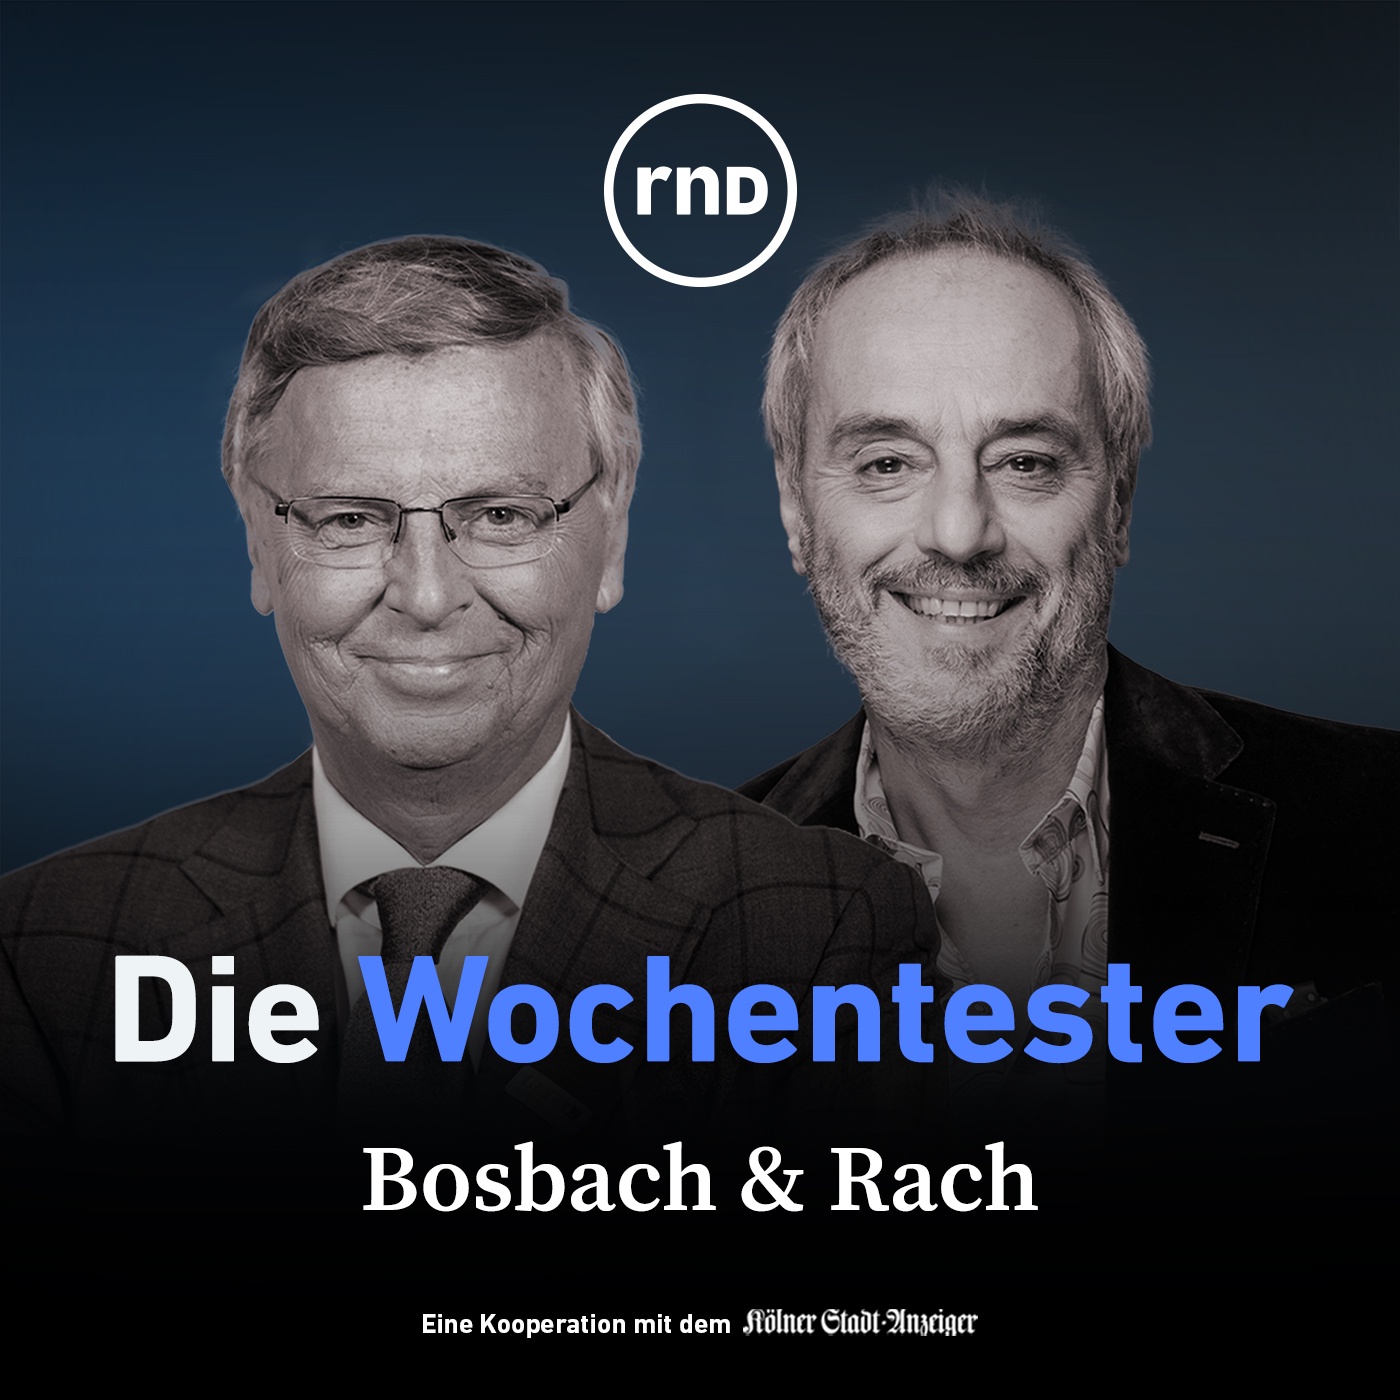 Bosbach & Rach - mit Marie-Agnes Strack-Zimmermann, Harald Welzer und Ralph Siegel